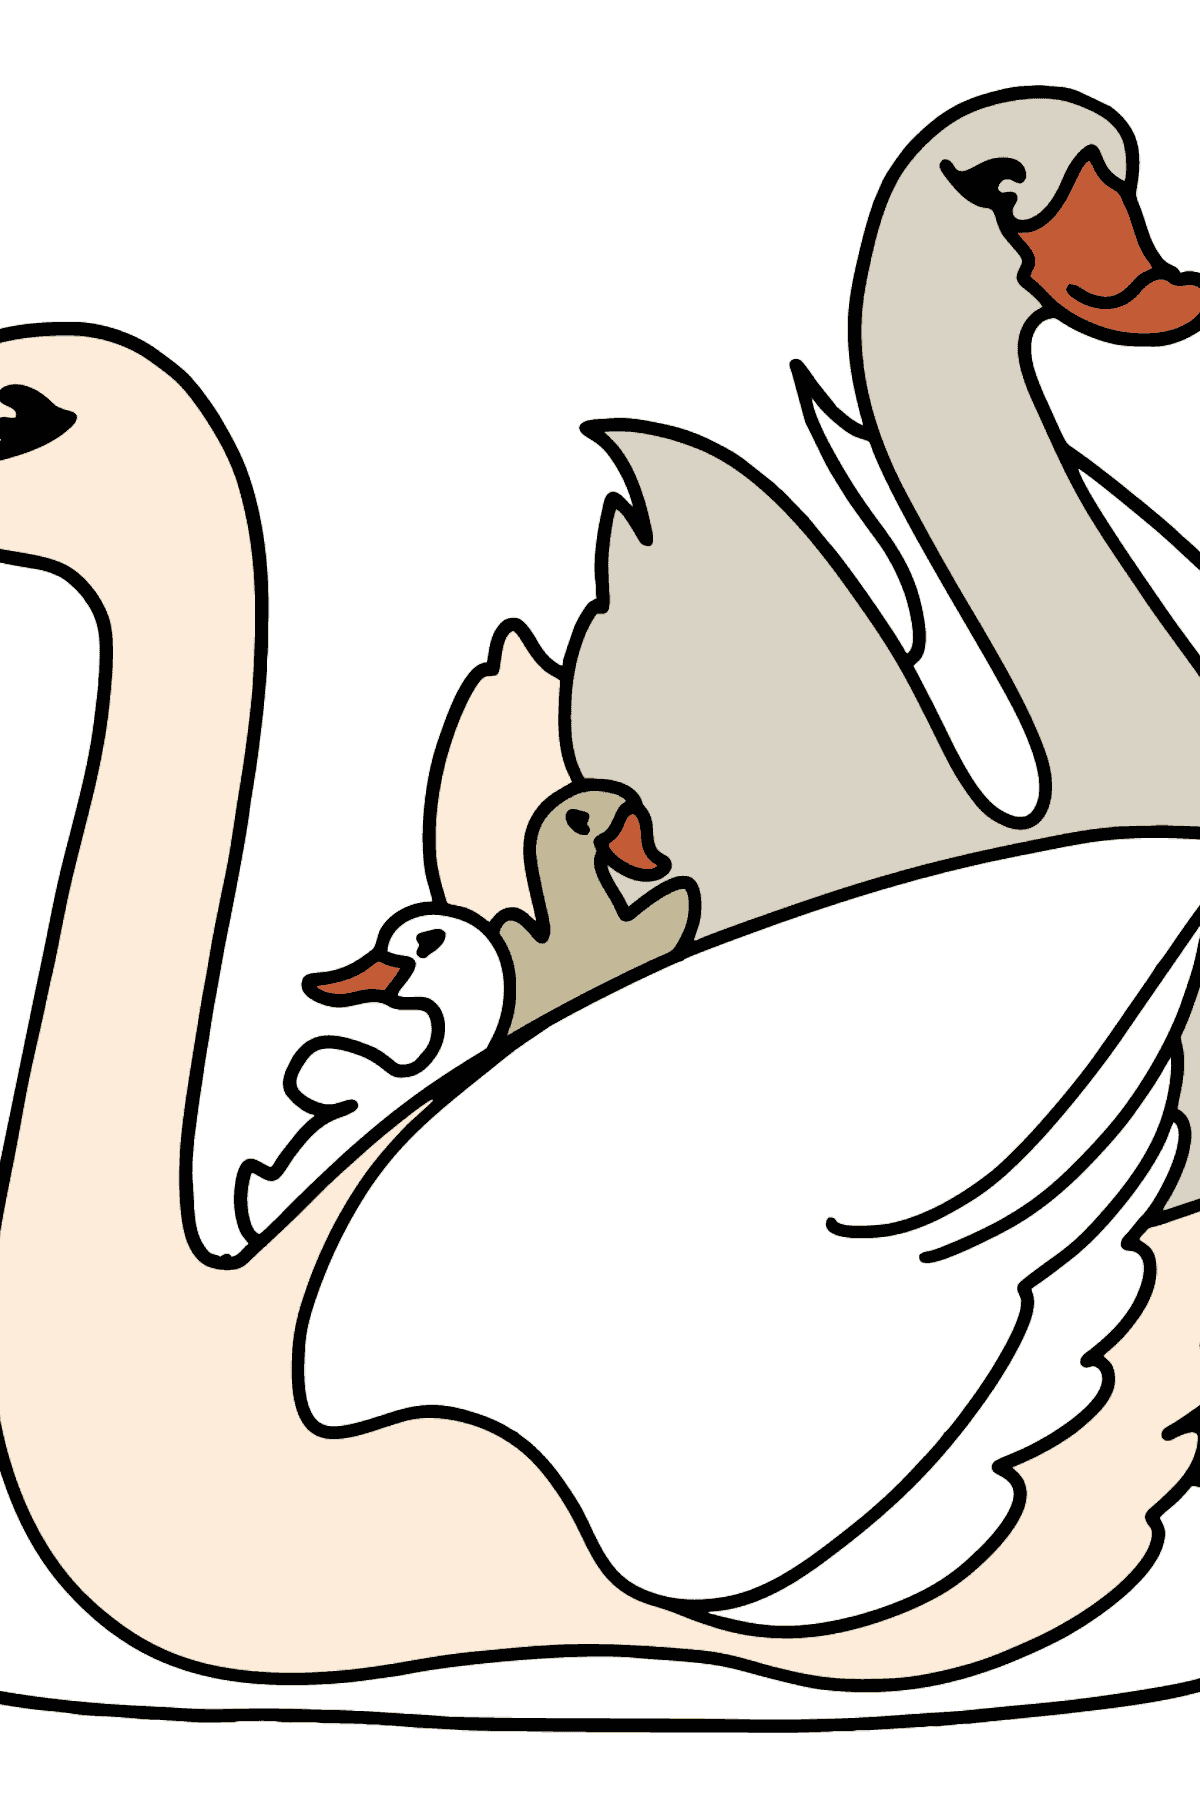 Beyaz kuğular boyama sayfası - Boyamalar çocuklar için